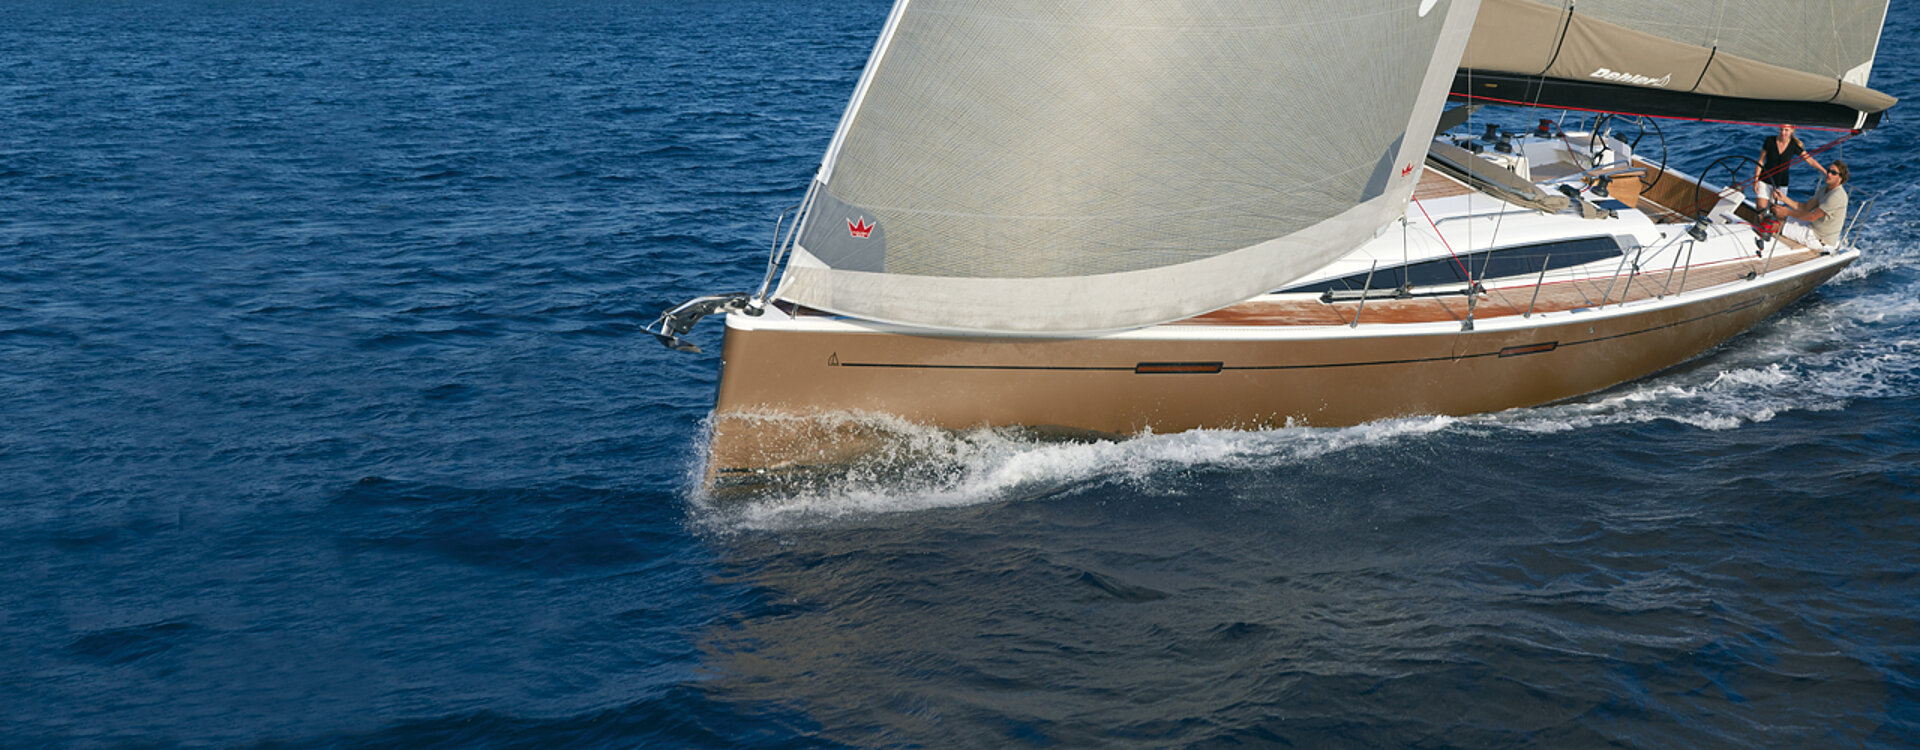 Yacht Dehler che solca le onde, offrendo l'eccitazione della vela con velocità e precisione